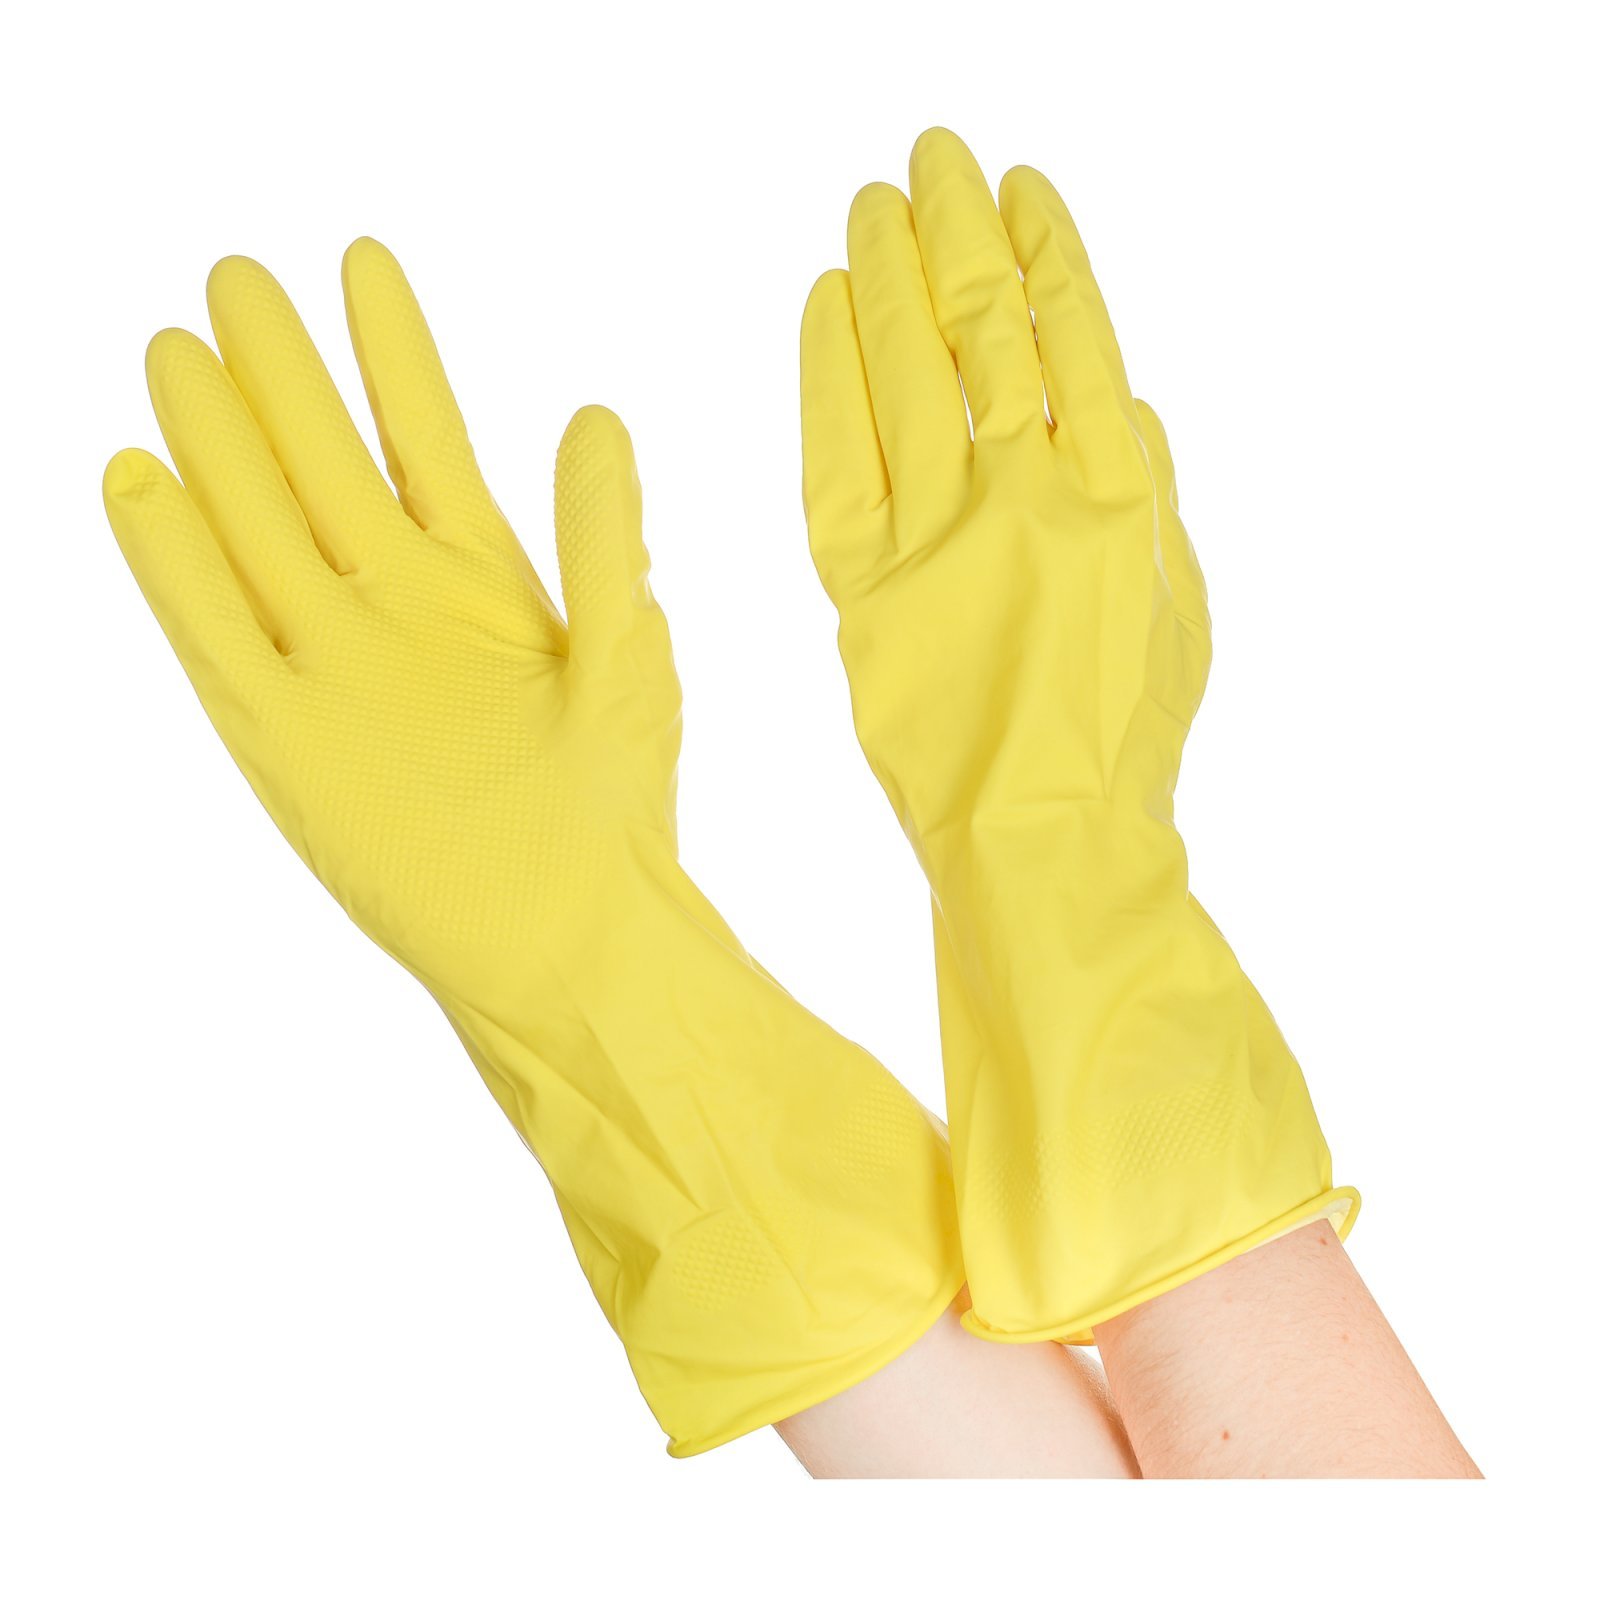 Перчатки резиновые хозяйственные Optiline с валиком. Предназначены для бытового использования во время уборки, стирки, мытья автомобиля, садовых работ. Размер L. Цвет желтый.